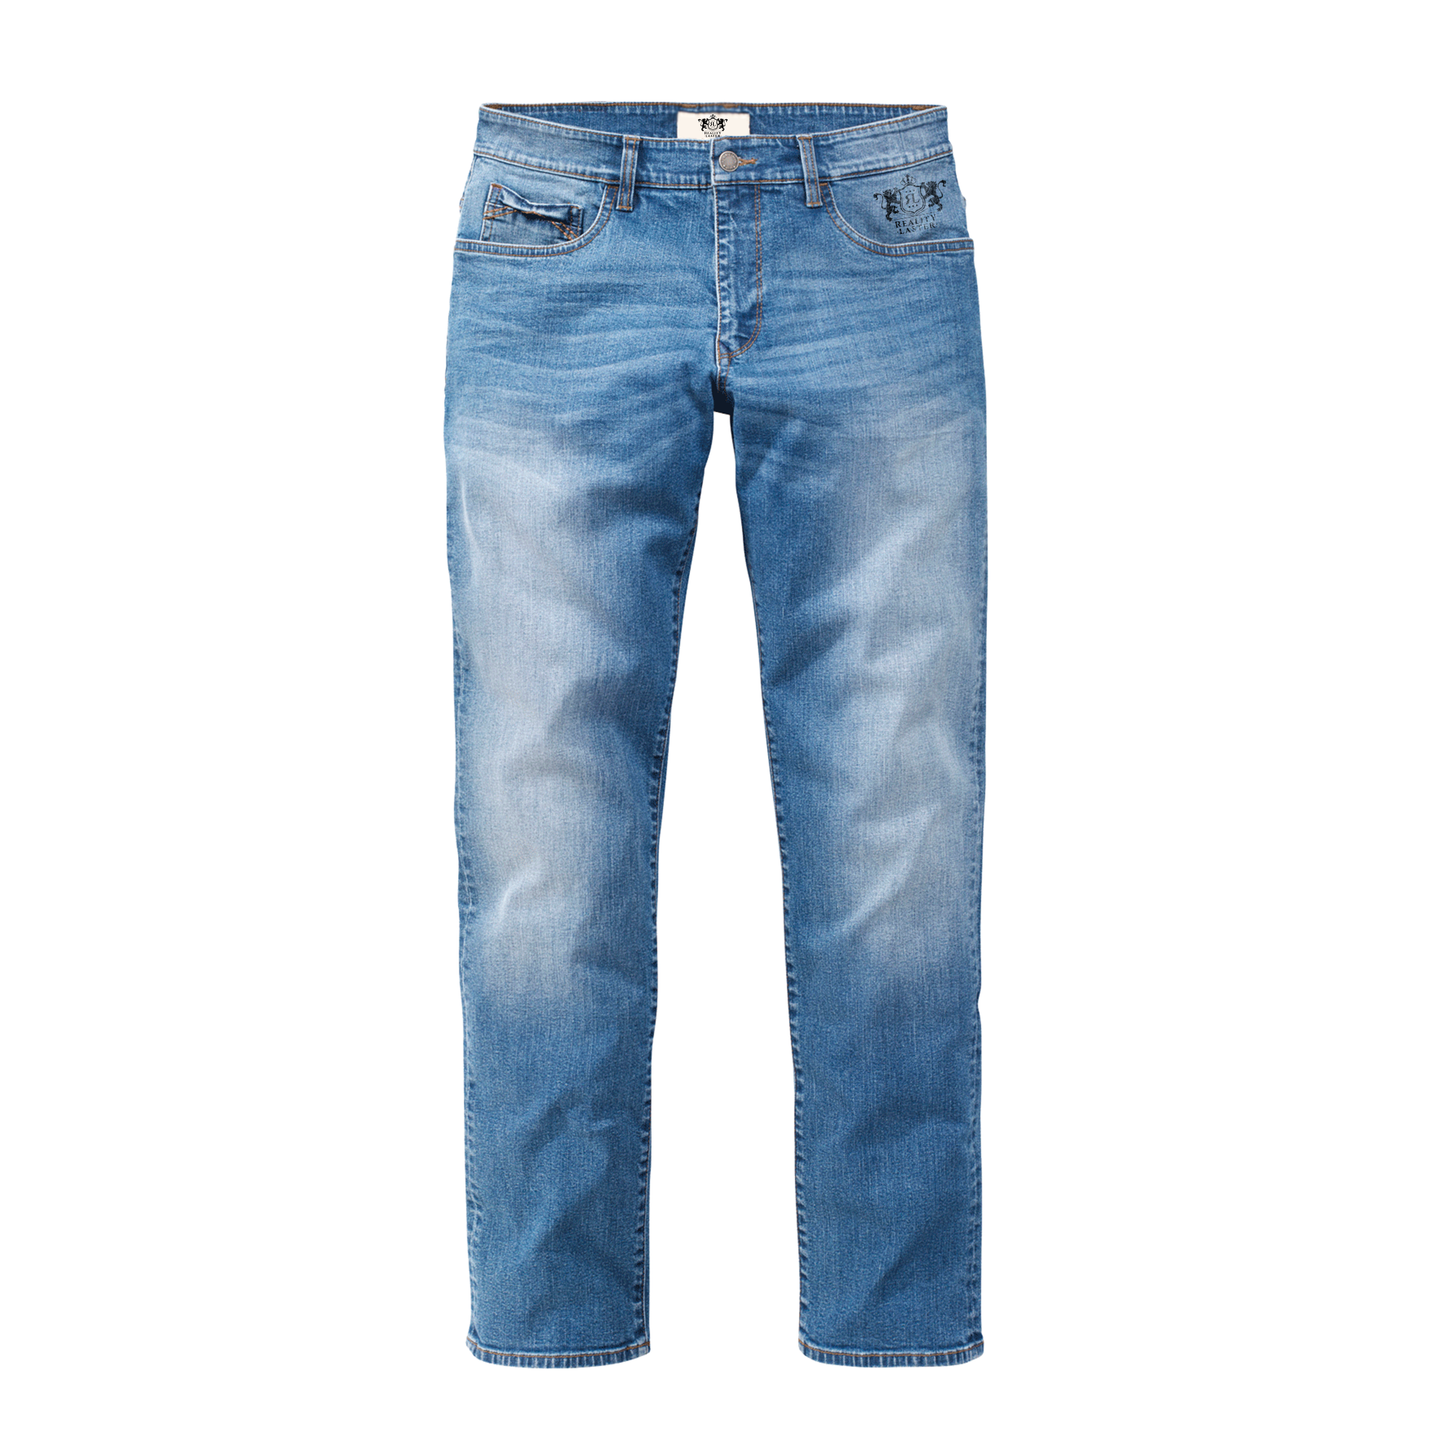 Men's Jeans (Blue)